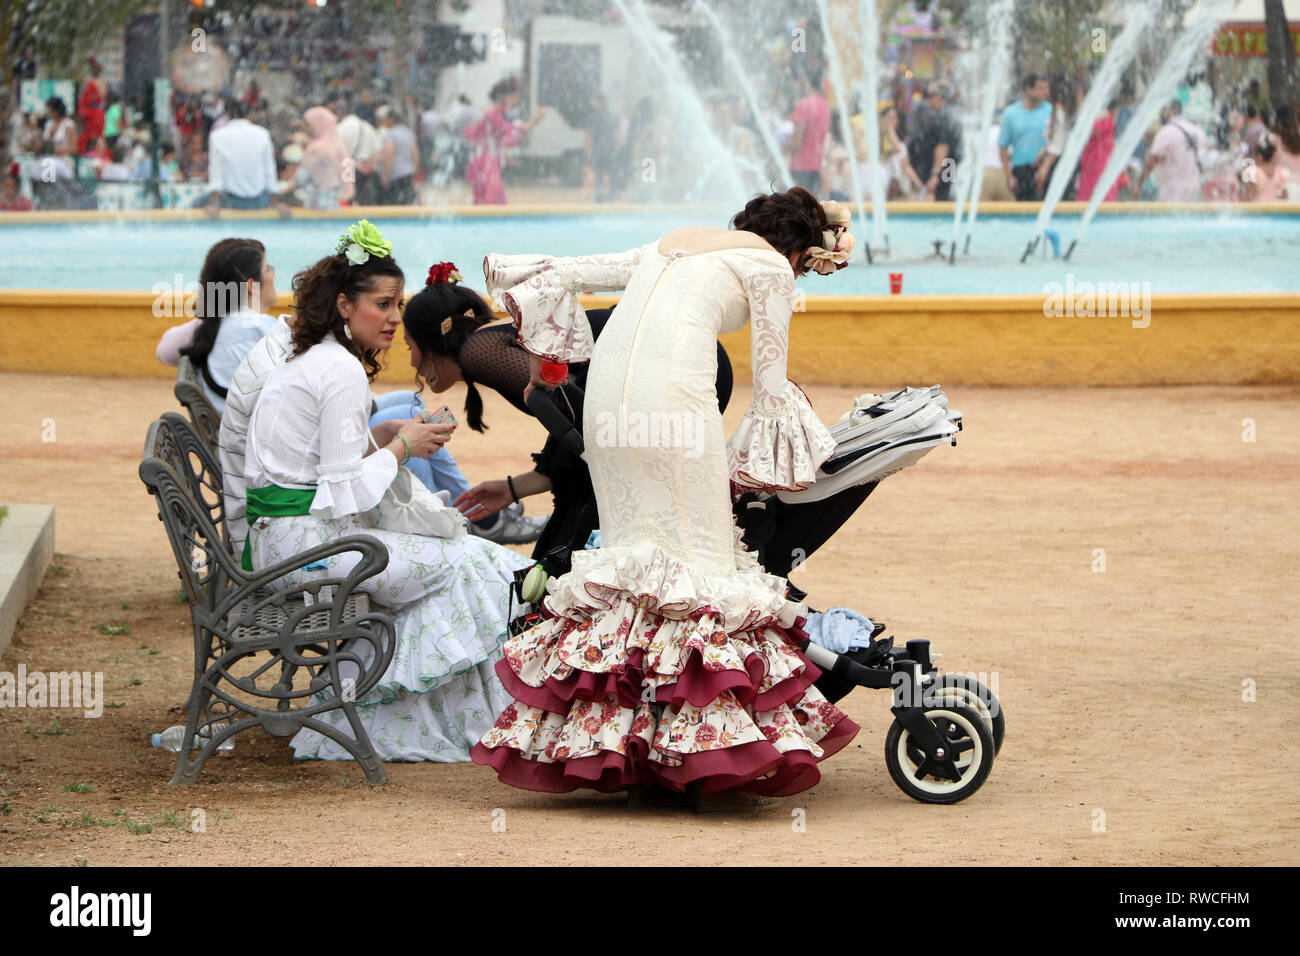 Frauen gekleidet in traditionellen Kostümen und genießen auf der Cordoba. Cordoba, Andalusien Spanien Europa. Redaktionelle Verwendung. - Bild Stockfoto